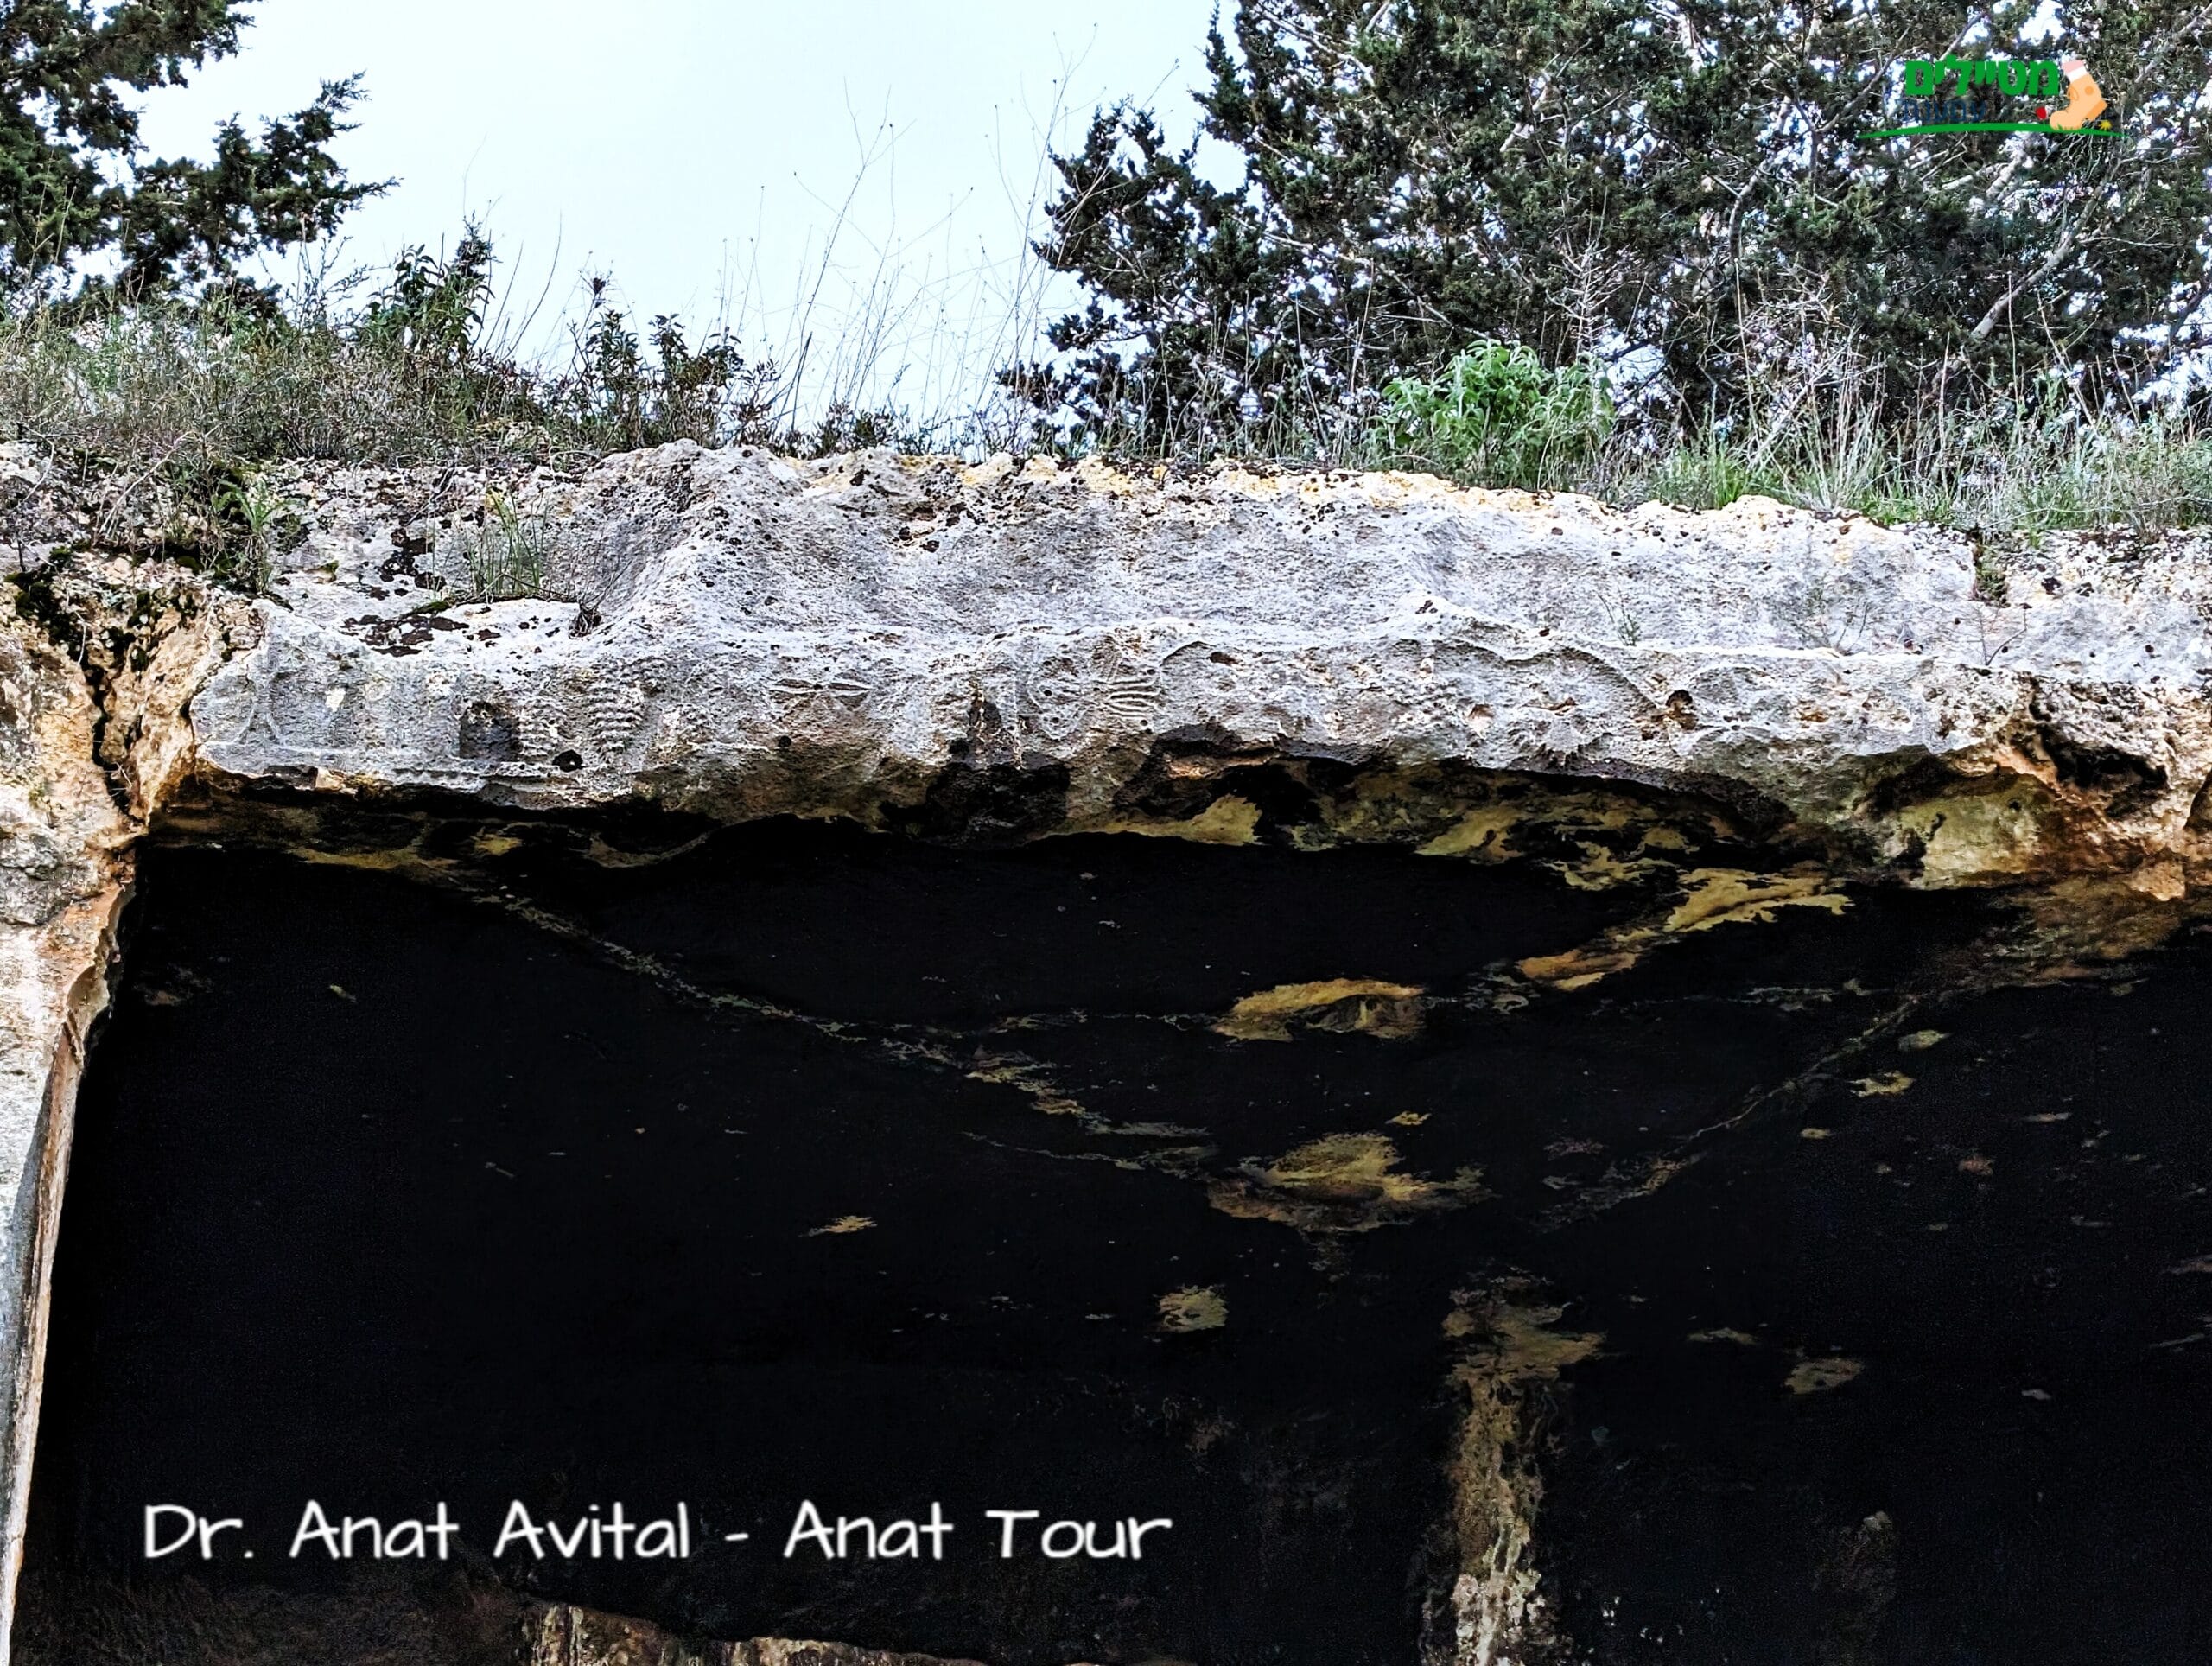 עיטורי גפן על חזית מערת קבורה מקטע עבוד (בית אריה) יהודית מימי הבית השני, צילום: ד"ר ענת אביטל